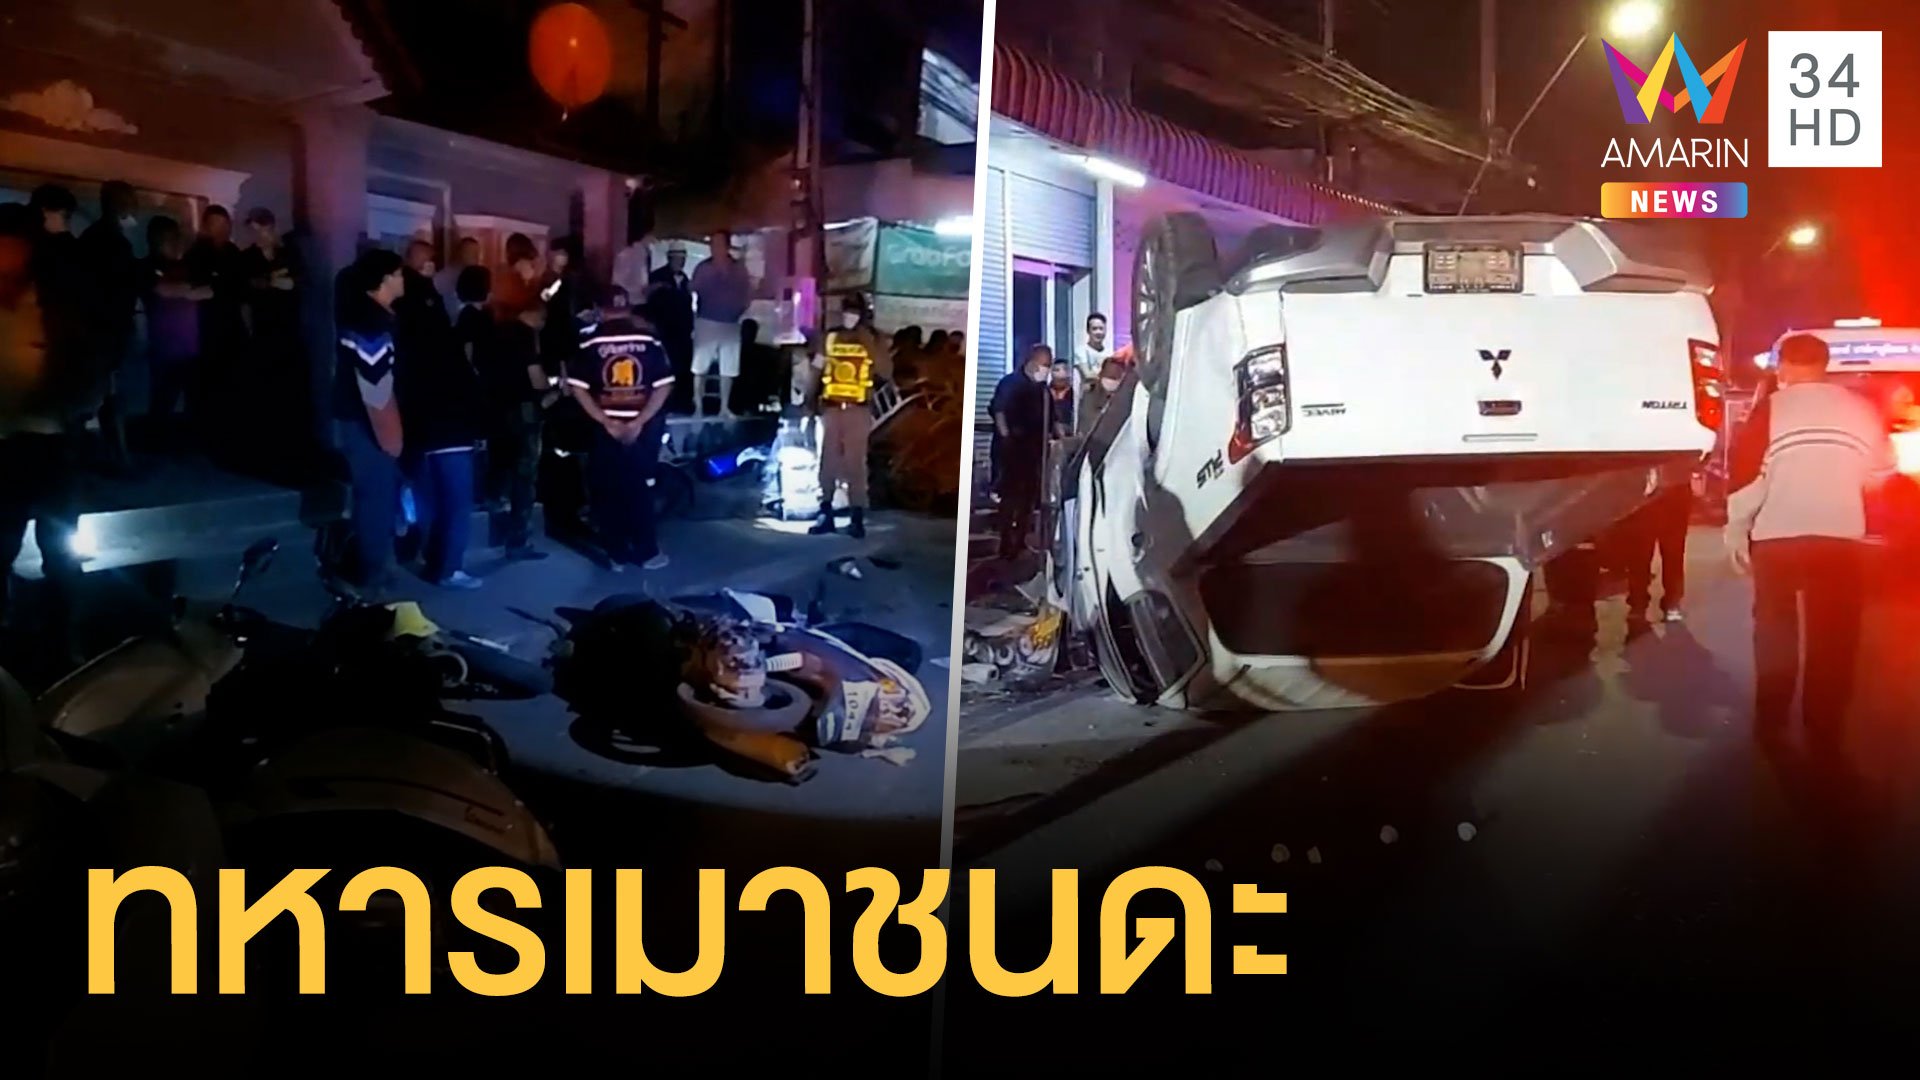 ทหารเมาขับกระบะชนรถชาวบ้านก่อนชนบ้านจนคว่ำ | ข่าวอรุณอมรินทร์ | 23 ม.ค. 64 | AMARIN TVHD34